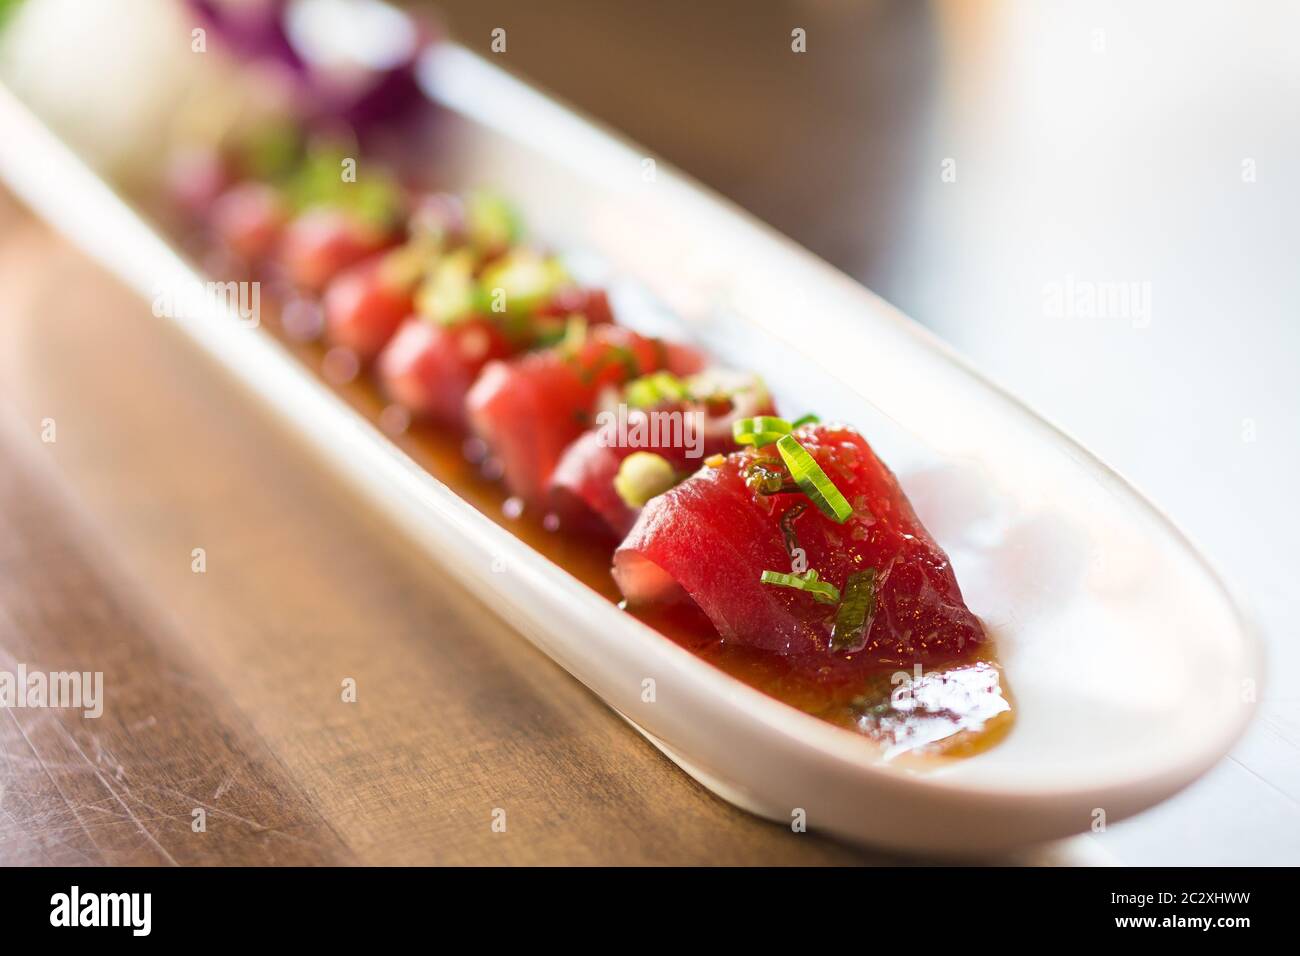 Piatto di sashimi di tonno. Il tonno sashimi è un piatto di cucina giapponese a fette sottili di pesce, in giappone viene spesso servito come antipasto nei ristoranti. Foto Stock